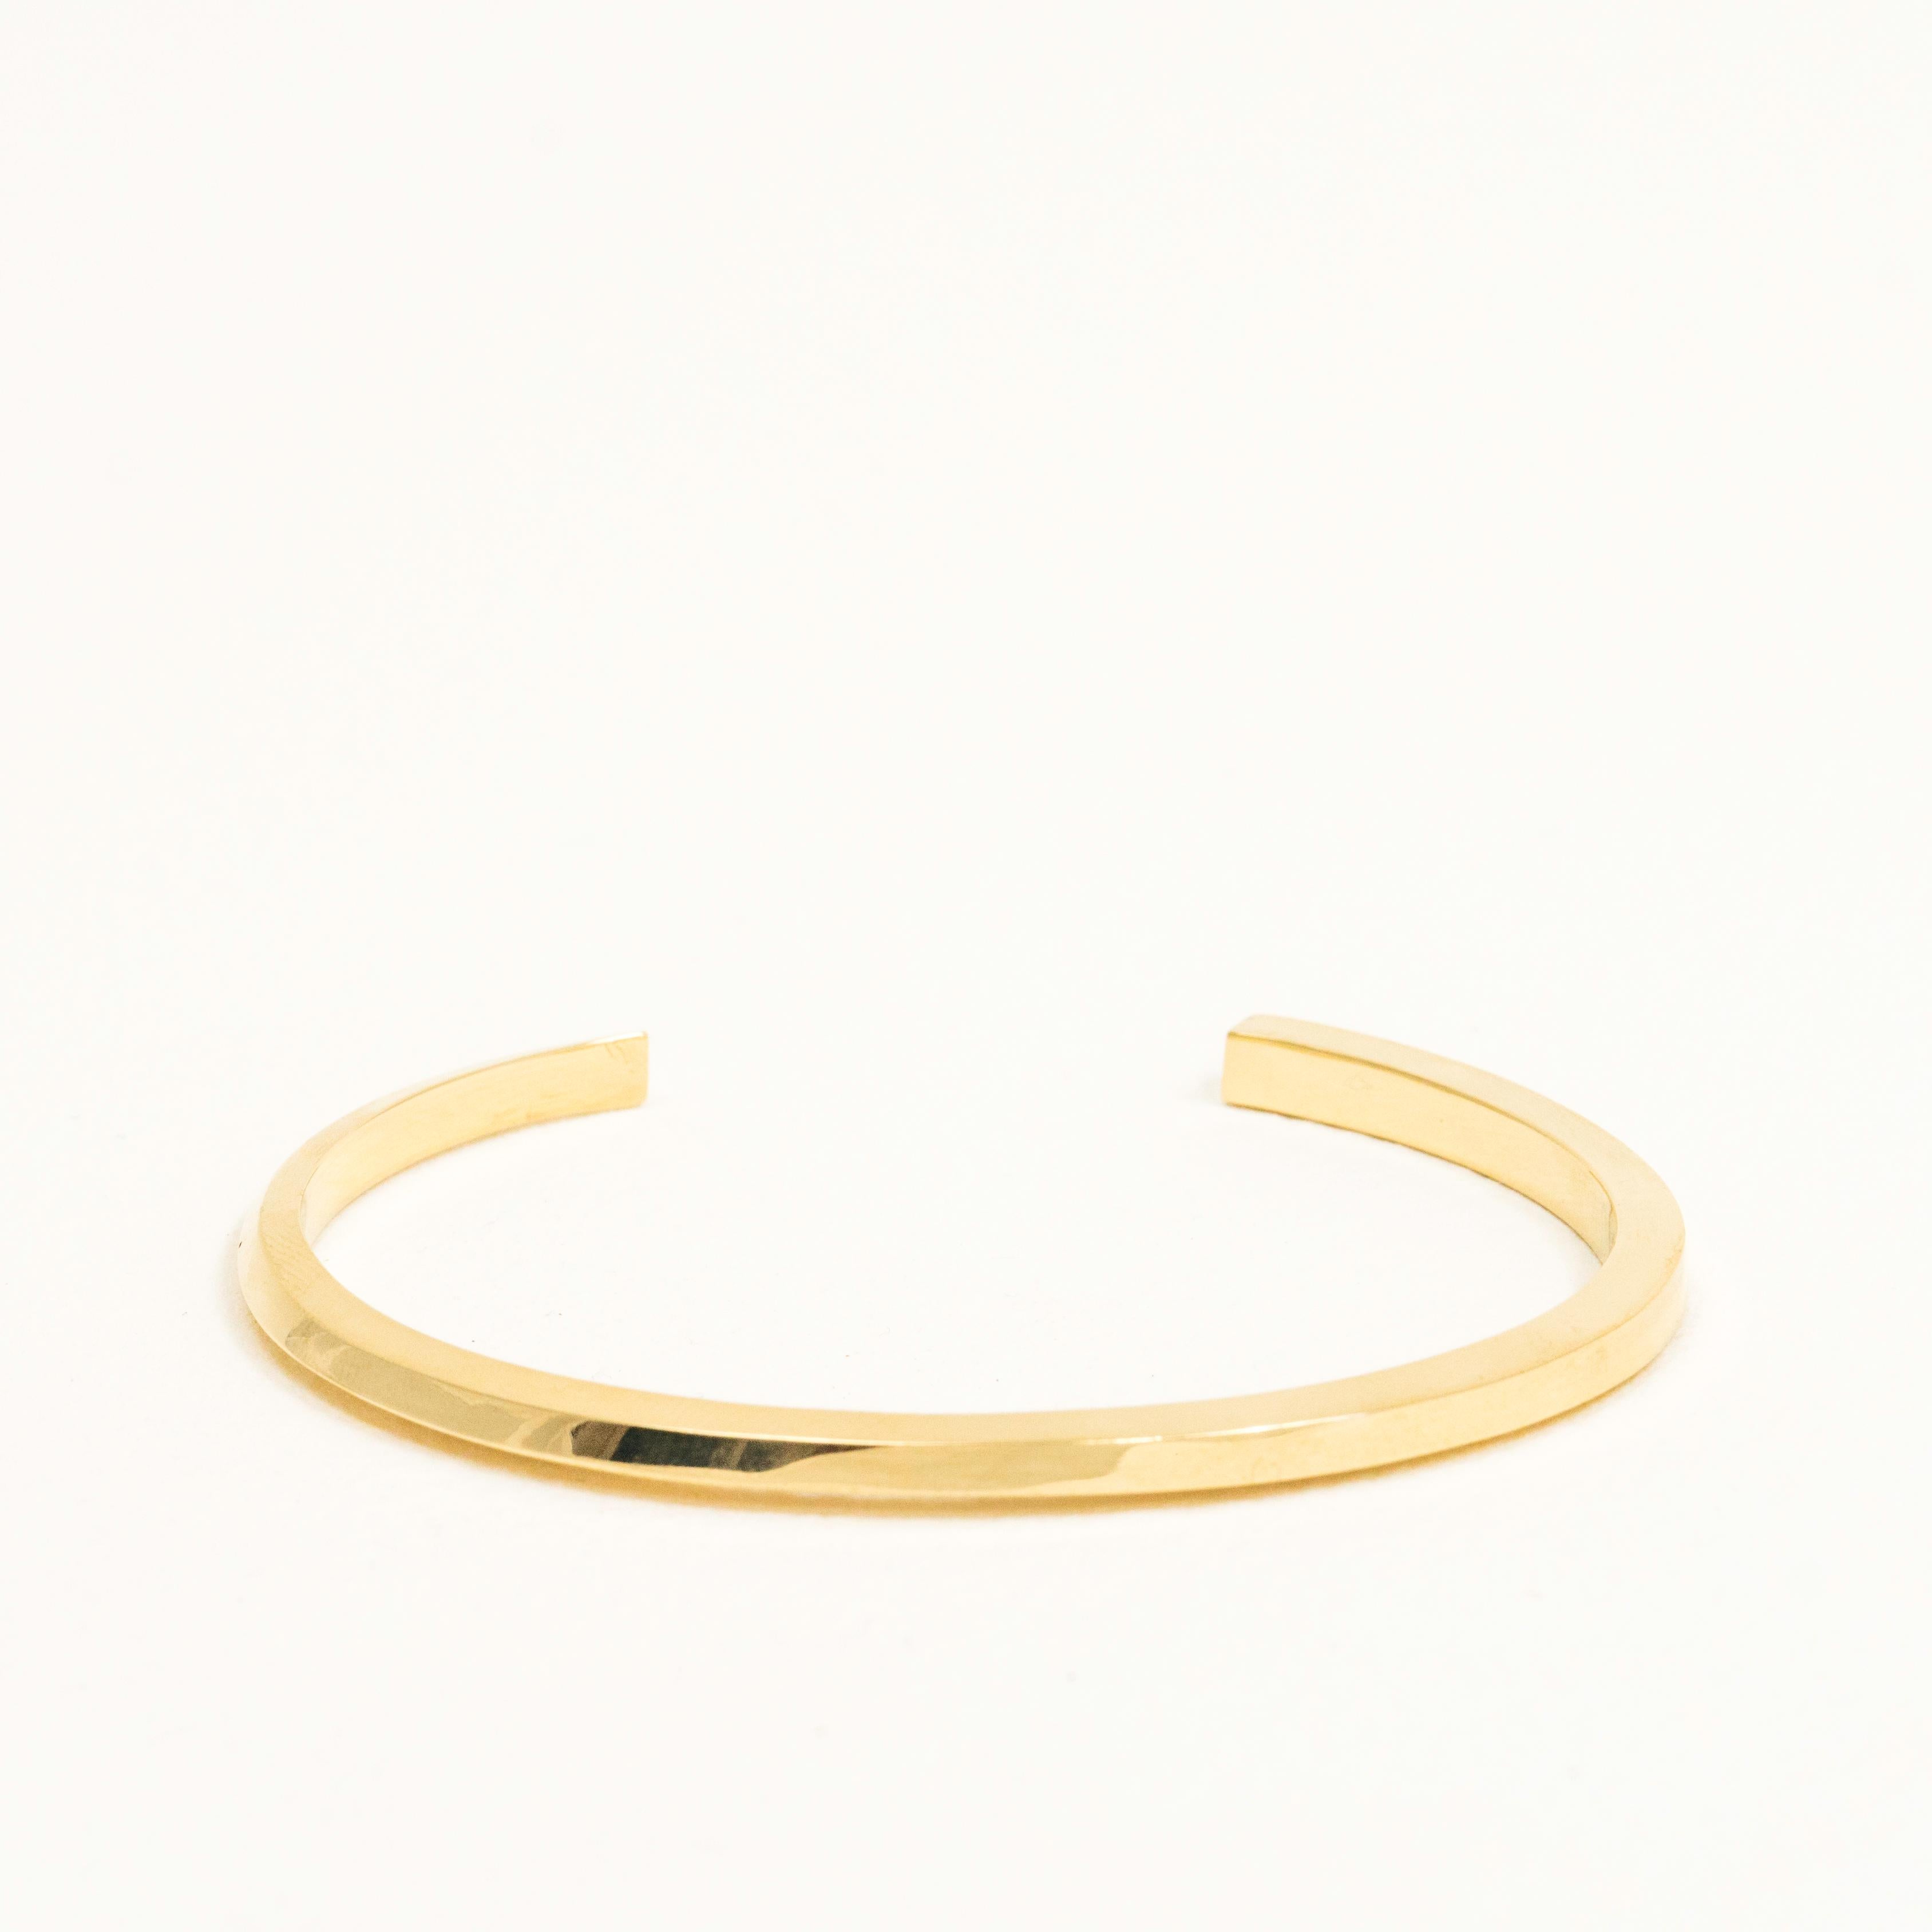 Das Flow Cuff Bracelet aus massivem 14-karätigem Gold beginnt als Dreieck und entwickelt sich am anderen Ende zu einem Quadrat. Dieses elegante Armband kann sich nahtlos in jeden Stil einfügen oder ein brillantes, minimalistisches Statement-Stück